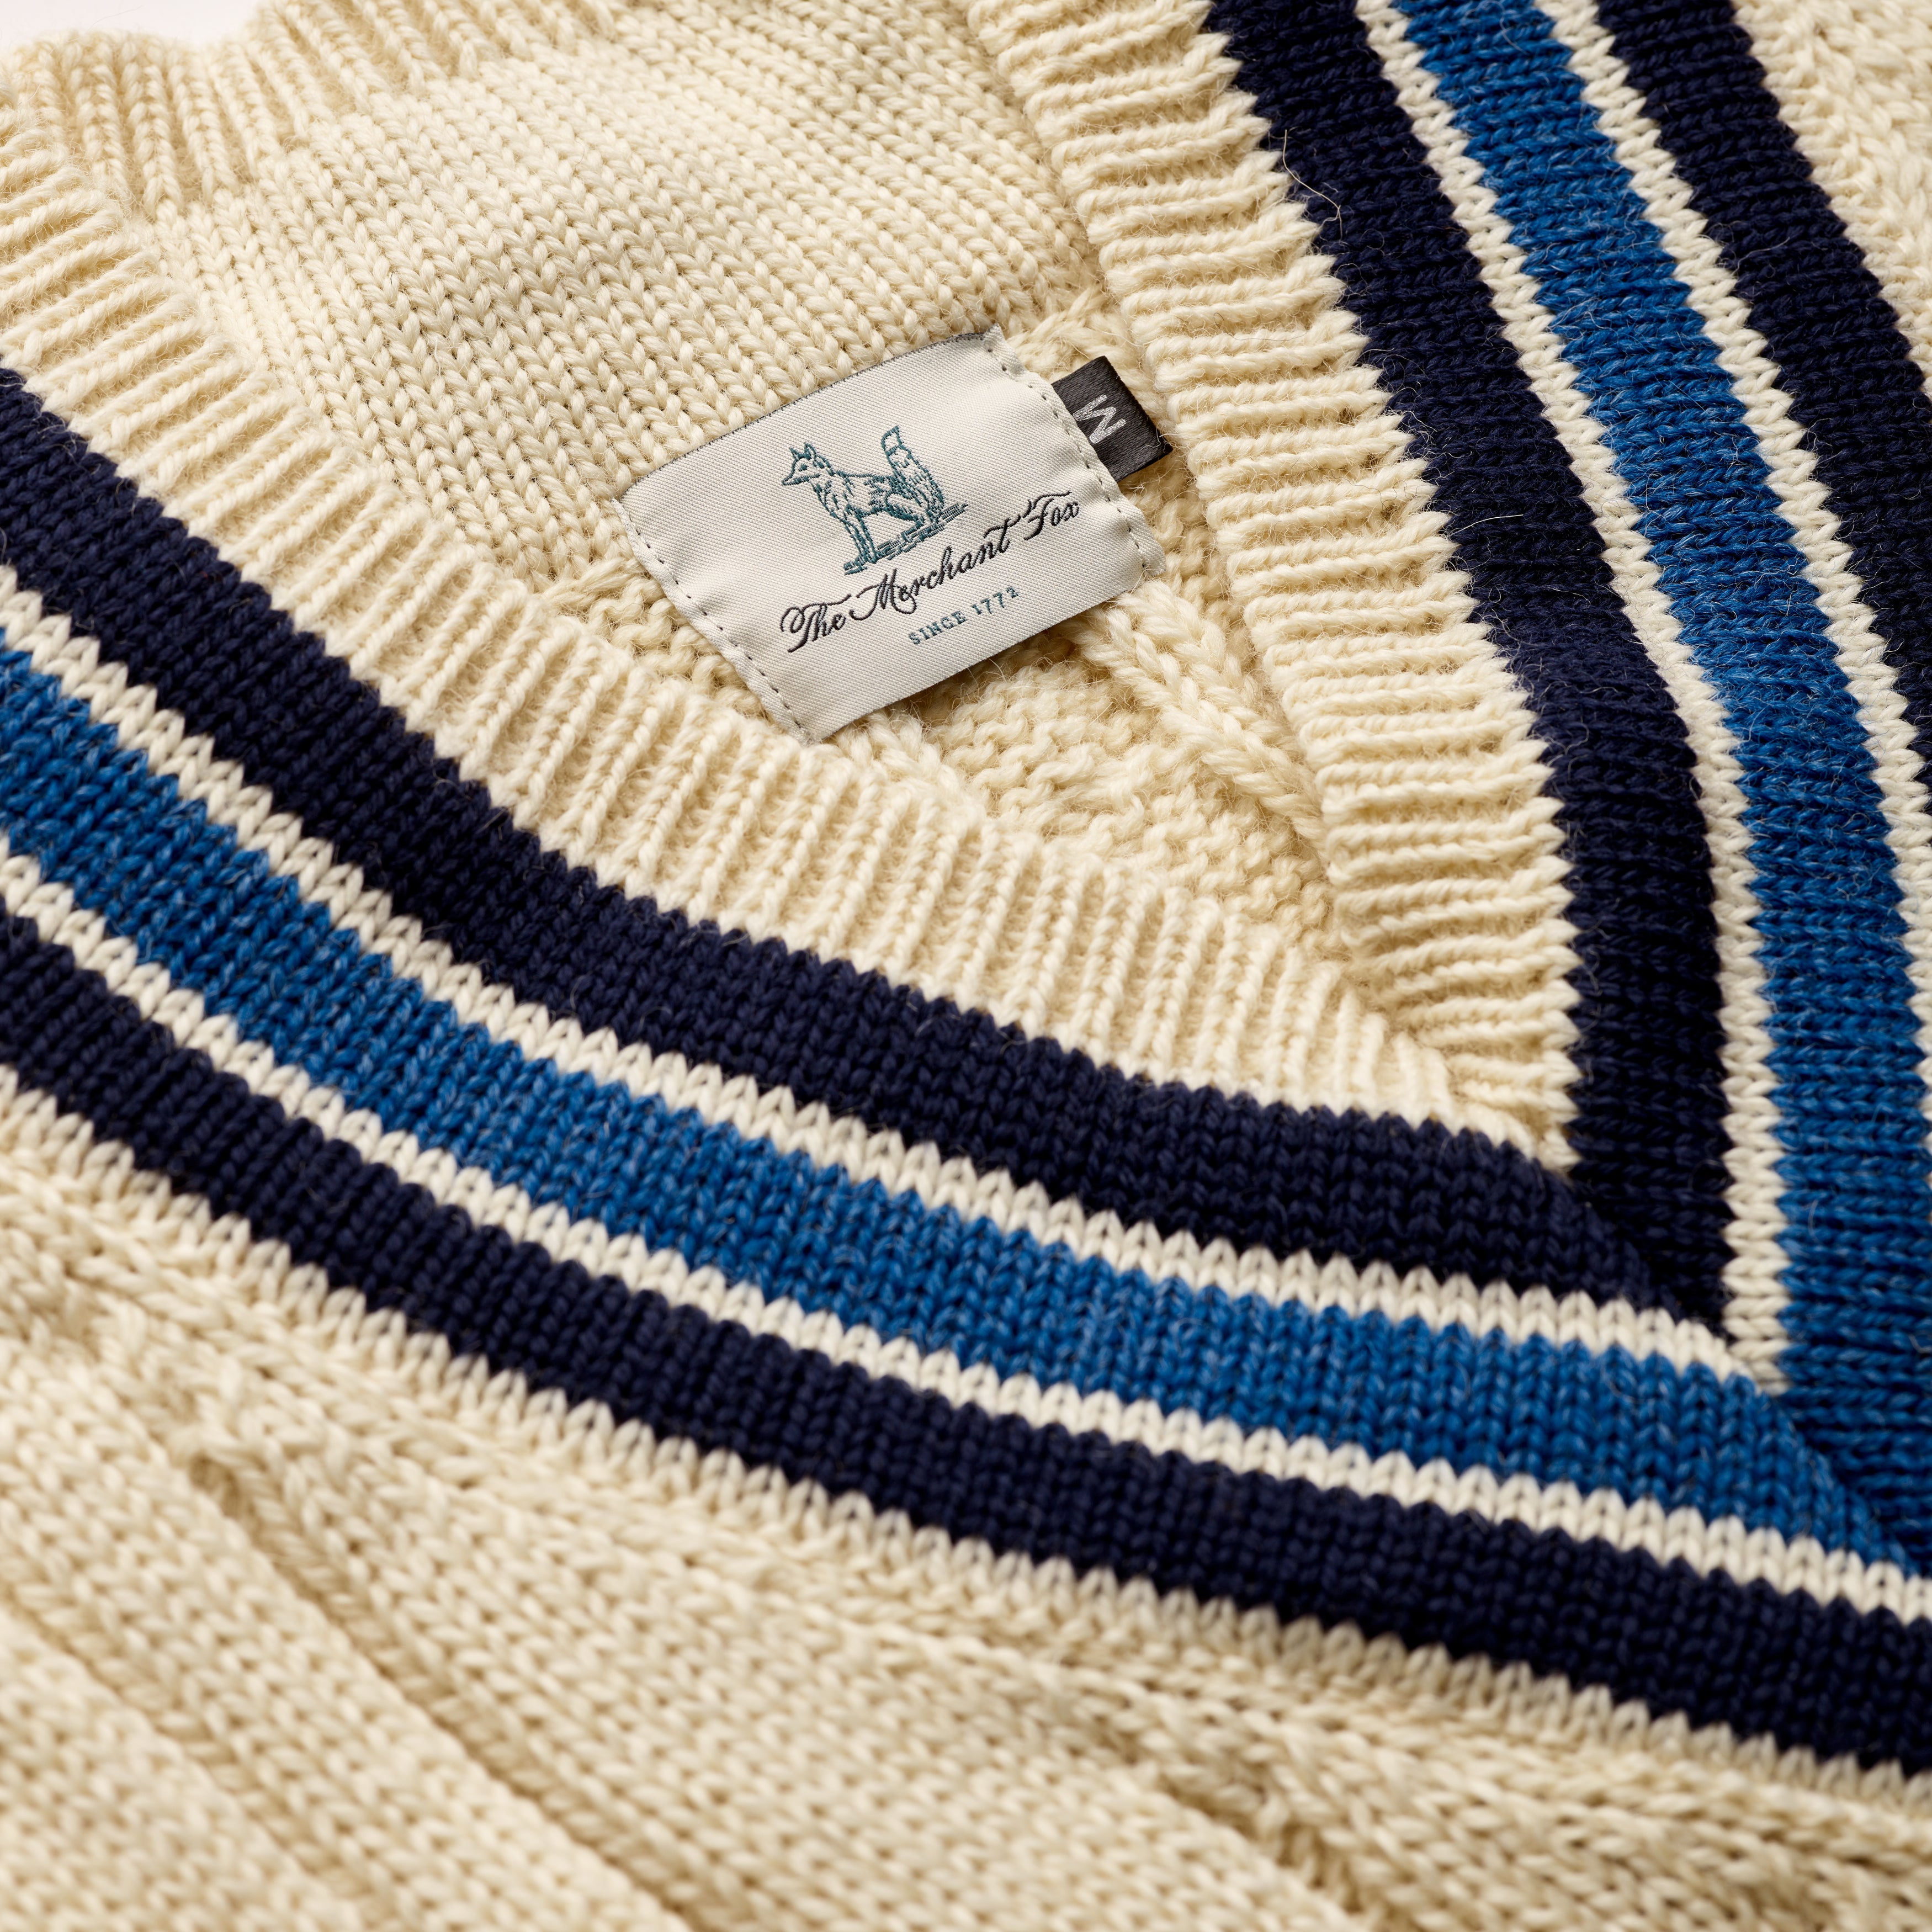 Fox Cricket Club Ecru Sweater with Navy & Sky Blue Stripes